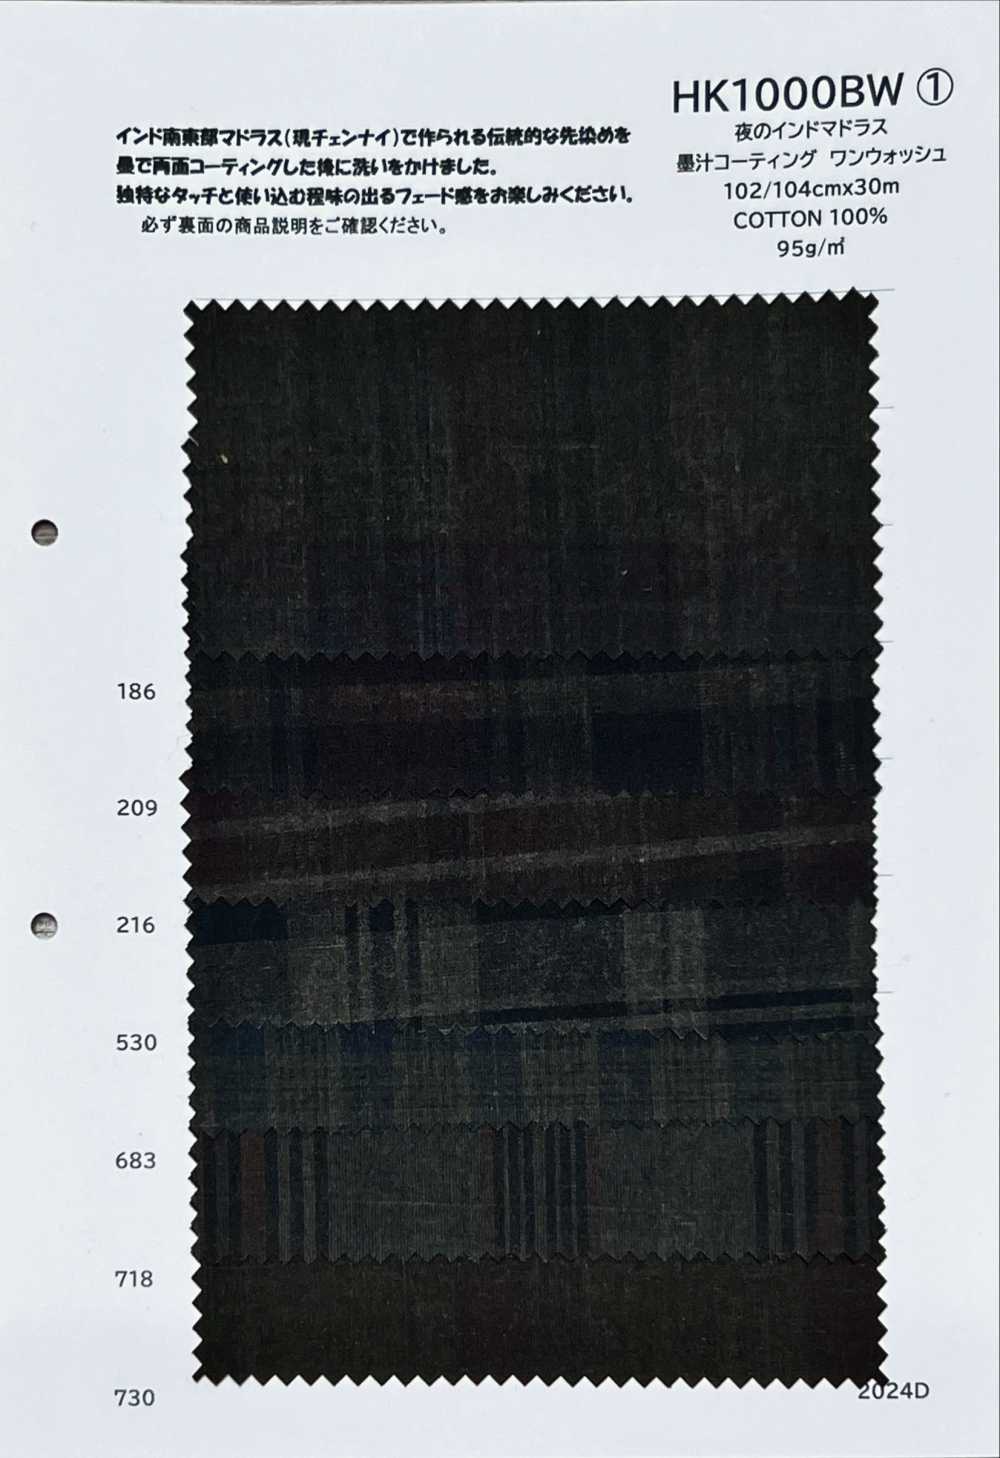 HK1000BW Nighttime Indian Madras, Ink Coating, One Wash[Textile / Fabric] KOYAMA